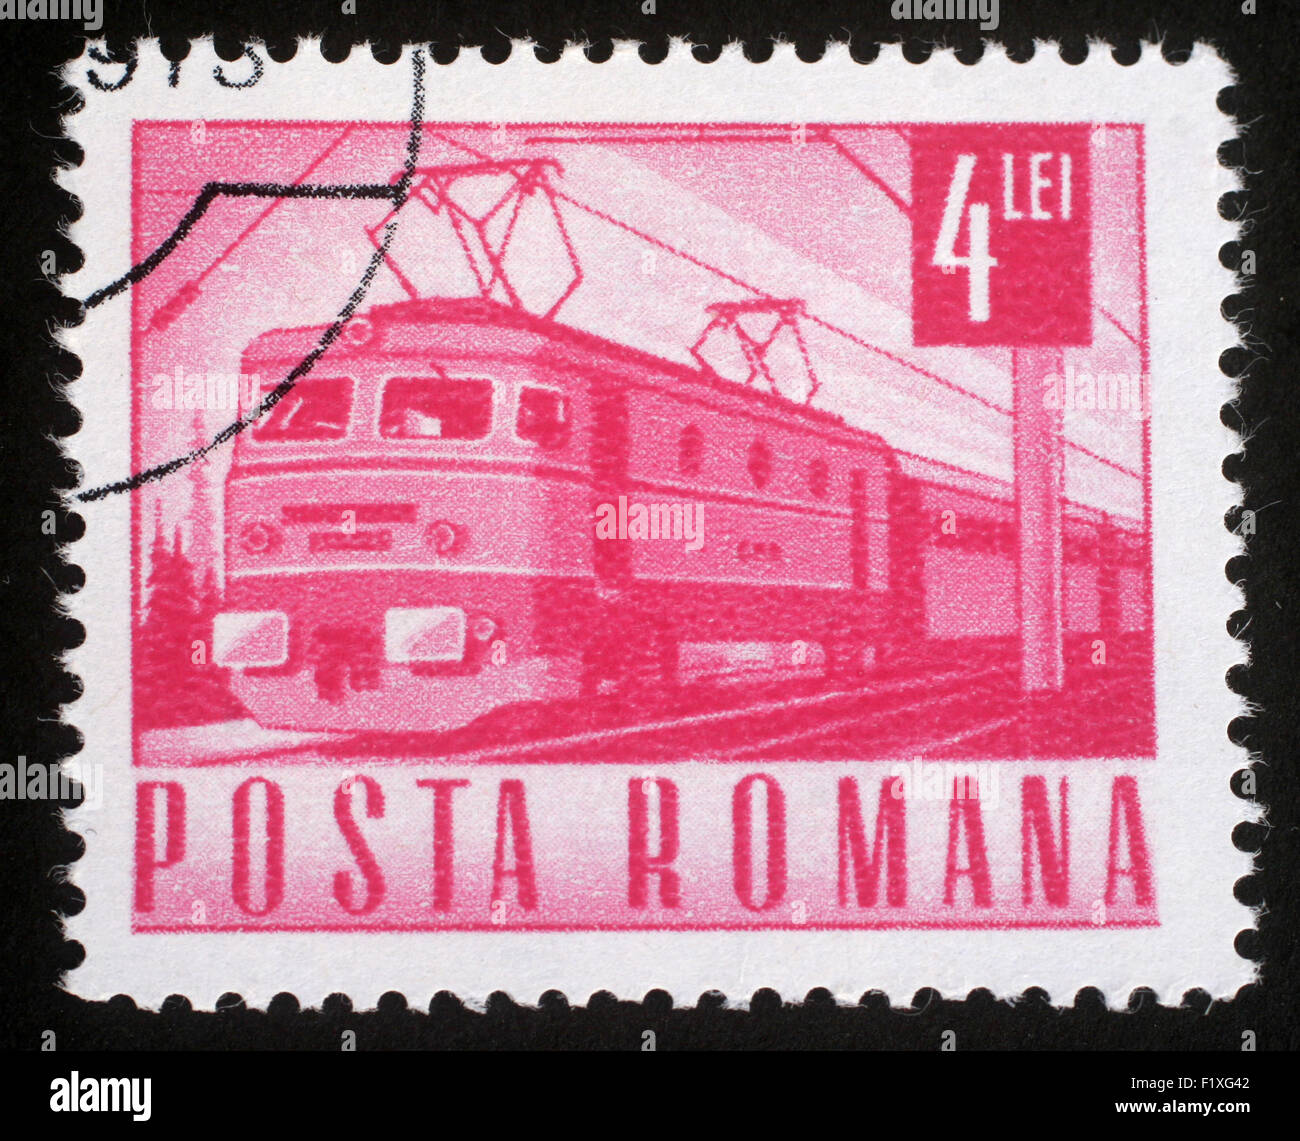 Timbres en Roumanie montre train électrique, vers 1971 Banque D'Images